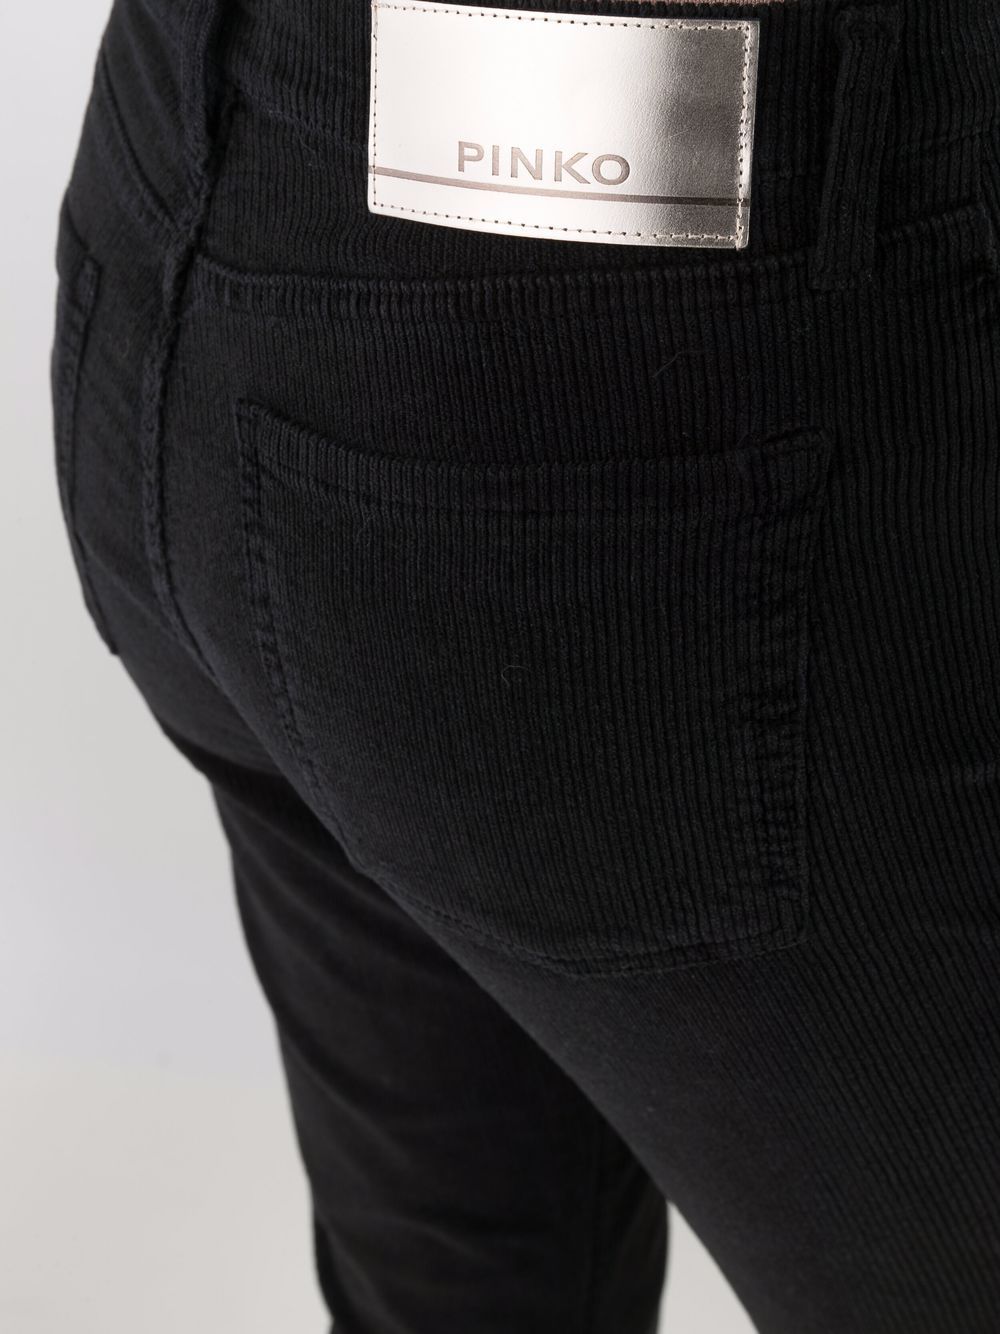 фото Pinko укороченные джинсы прямого кроя